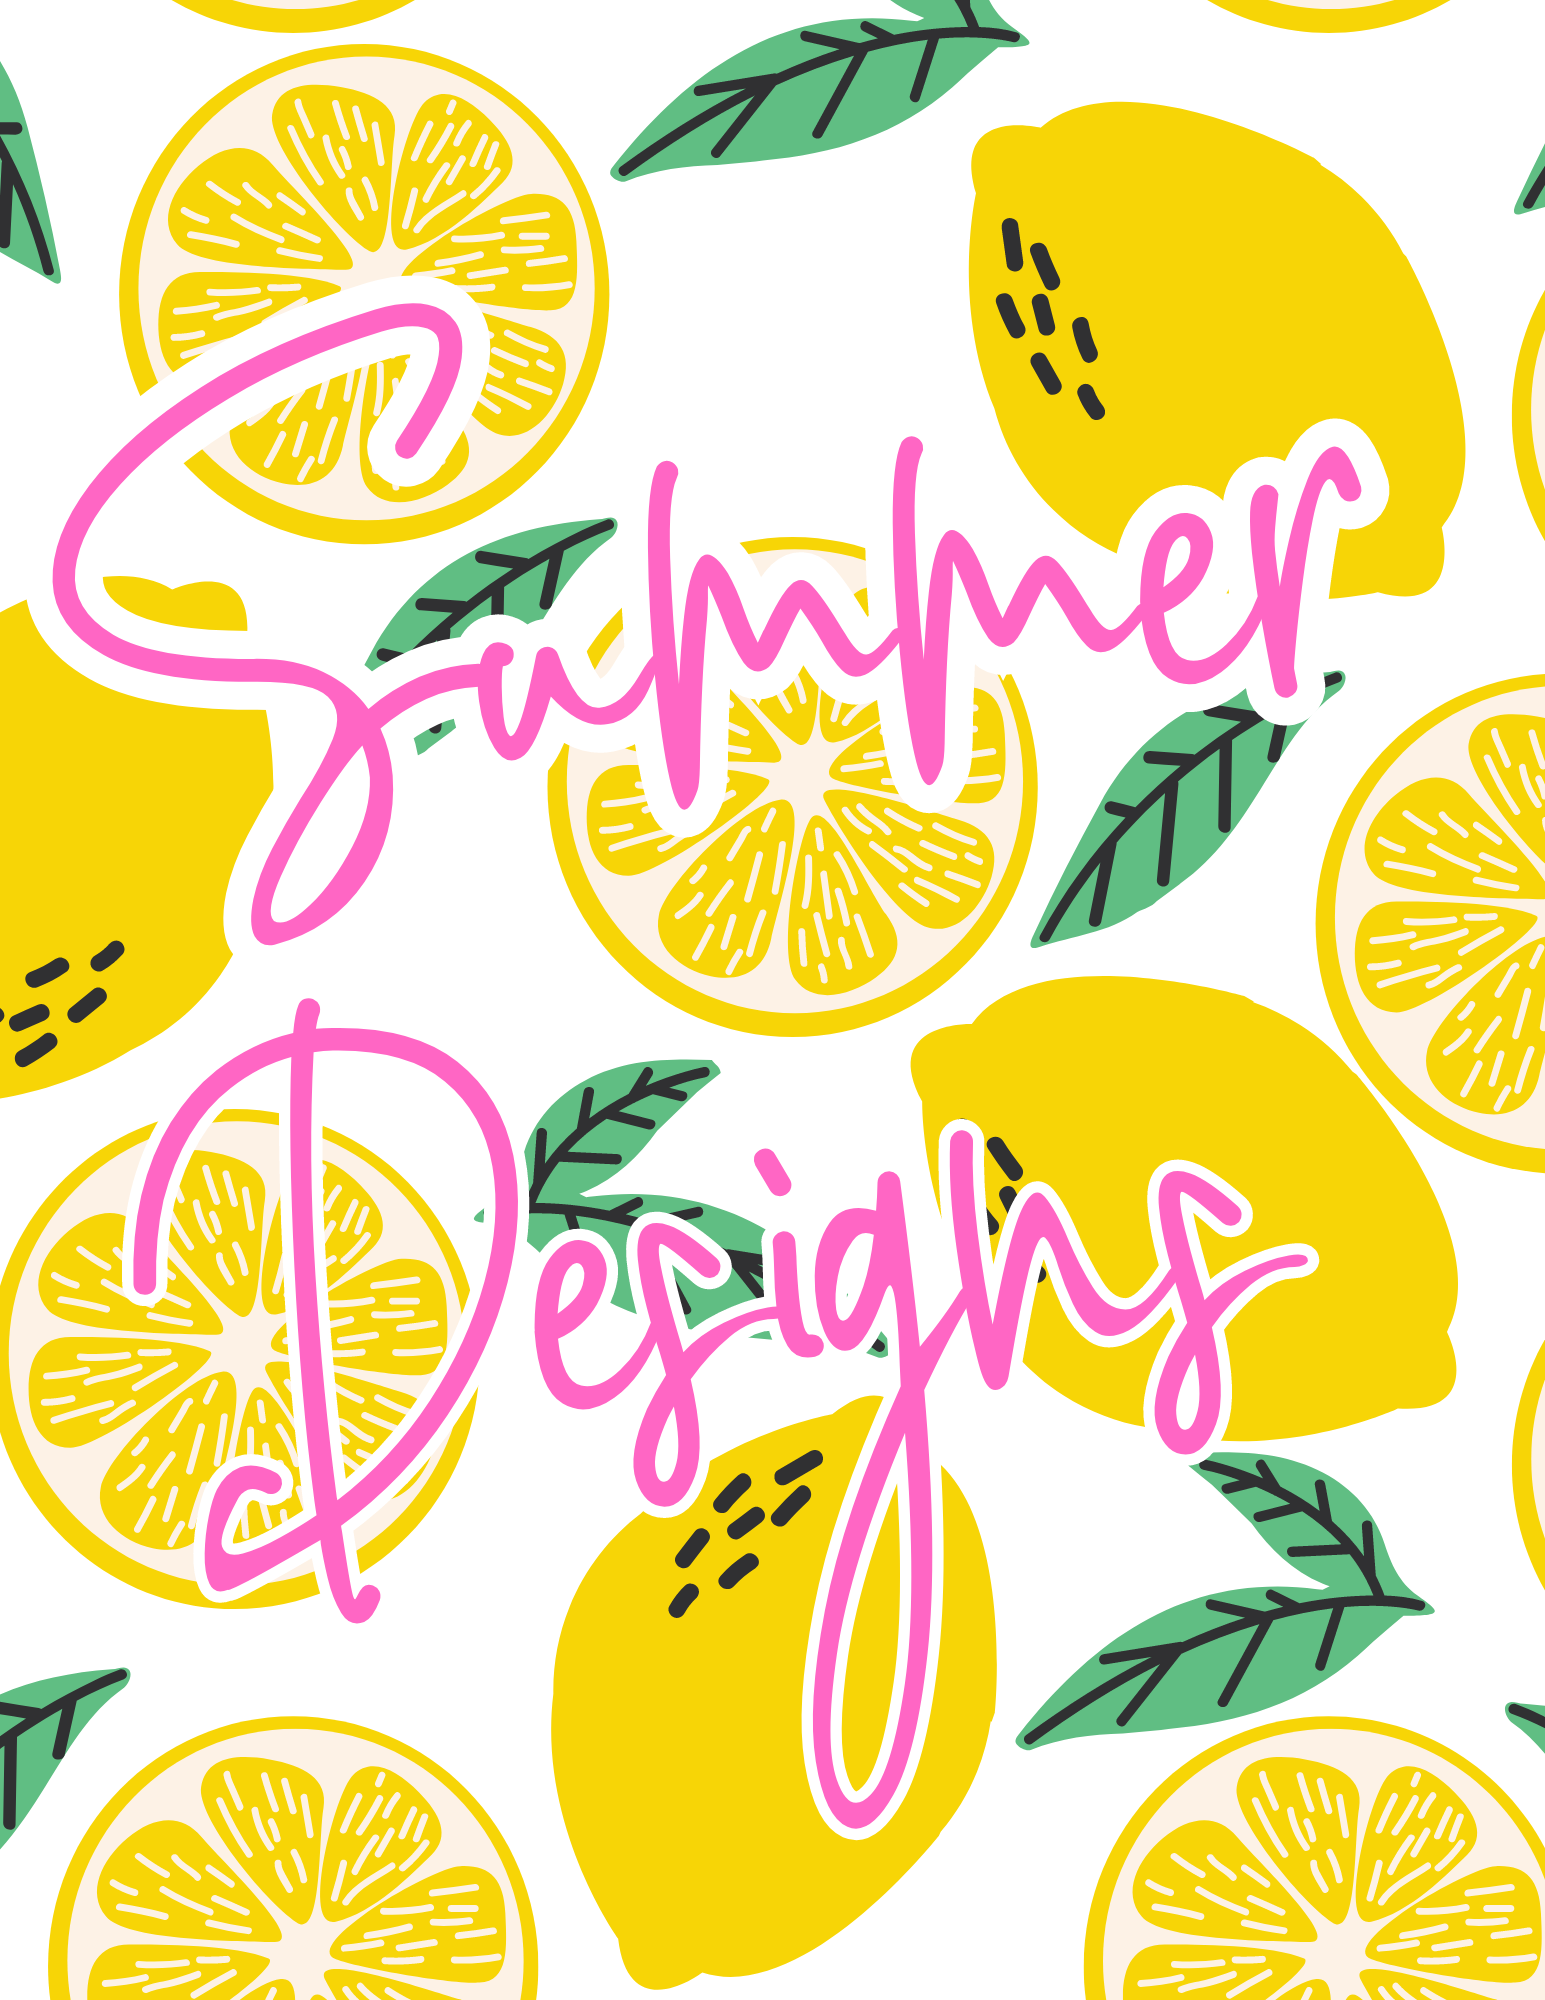 Summer Designs